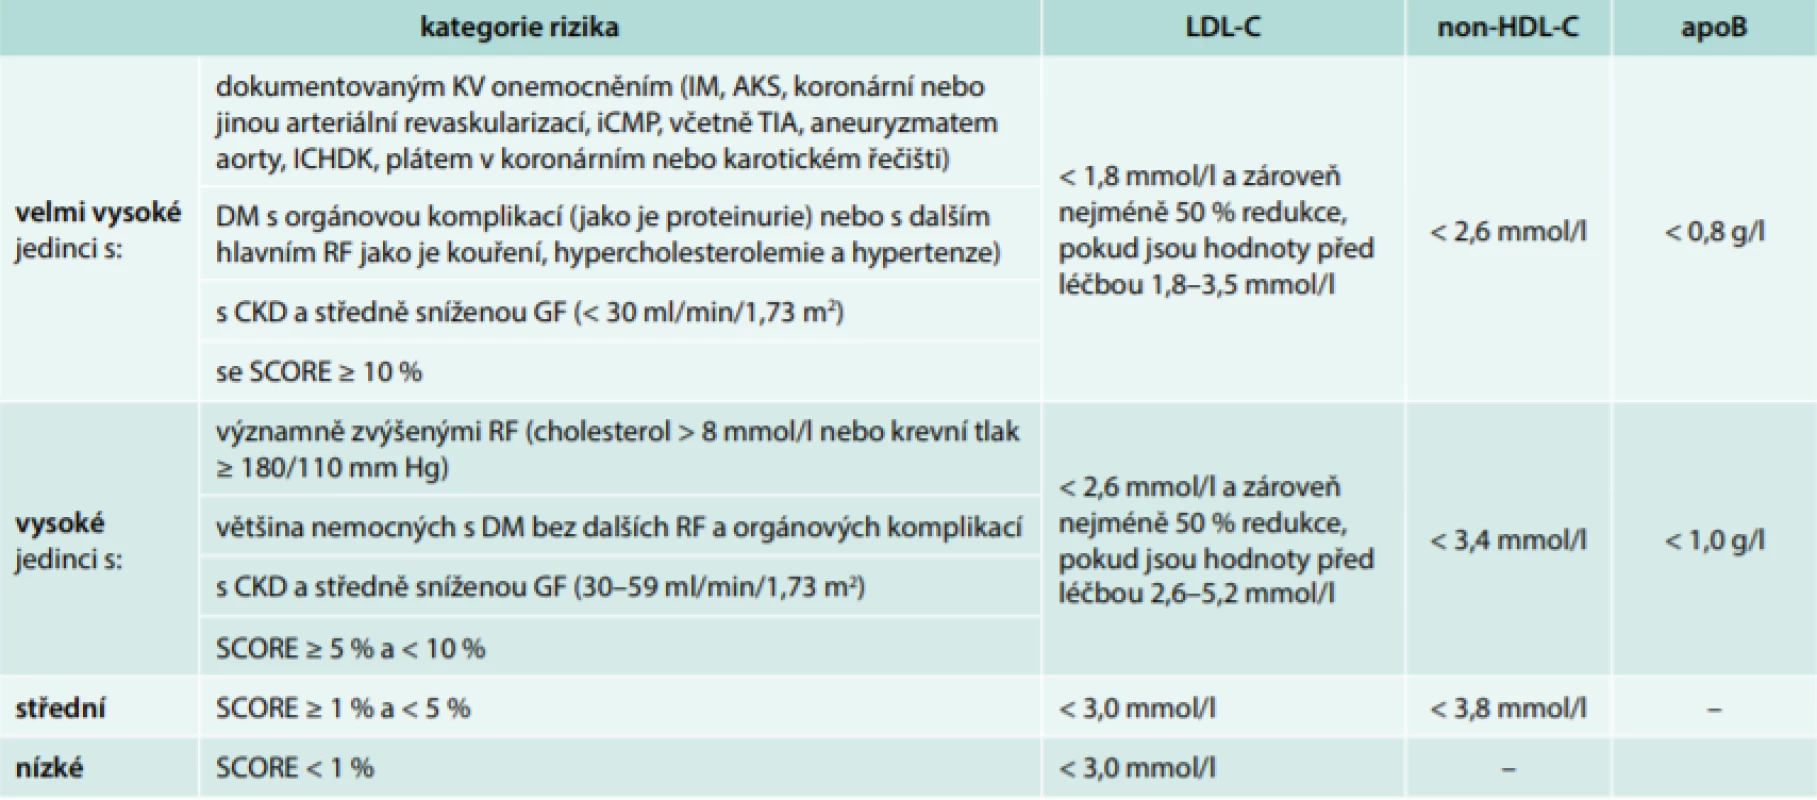 Rizikové kategorie s cílovými hodnotami krevních lipidů podle ESC/EAS doporučení pro léčbu
dyslipidemií 2016. Upraveno podle [4]